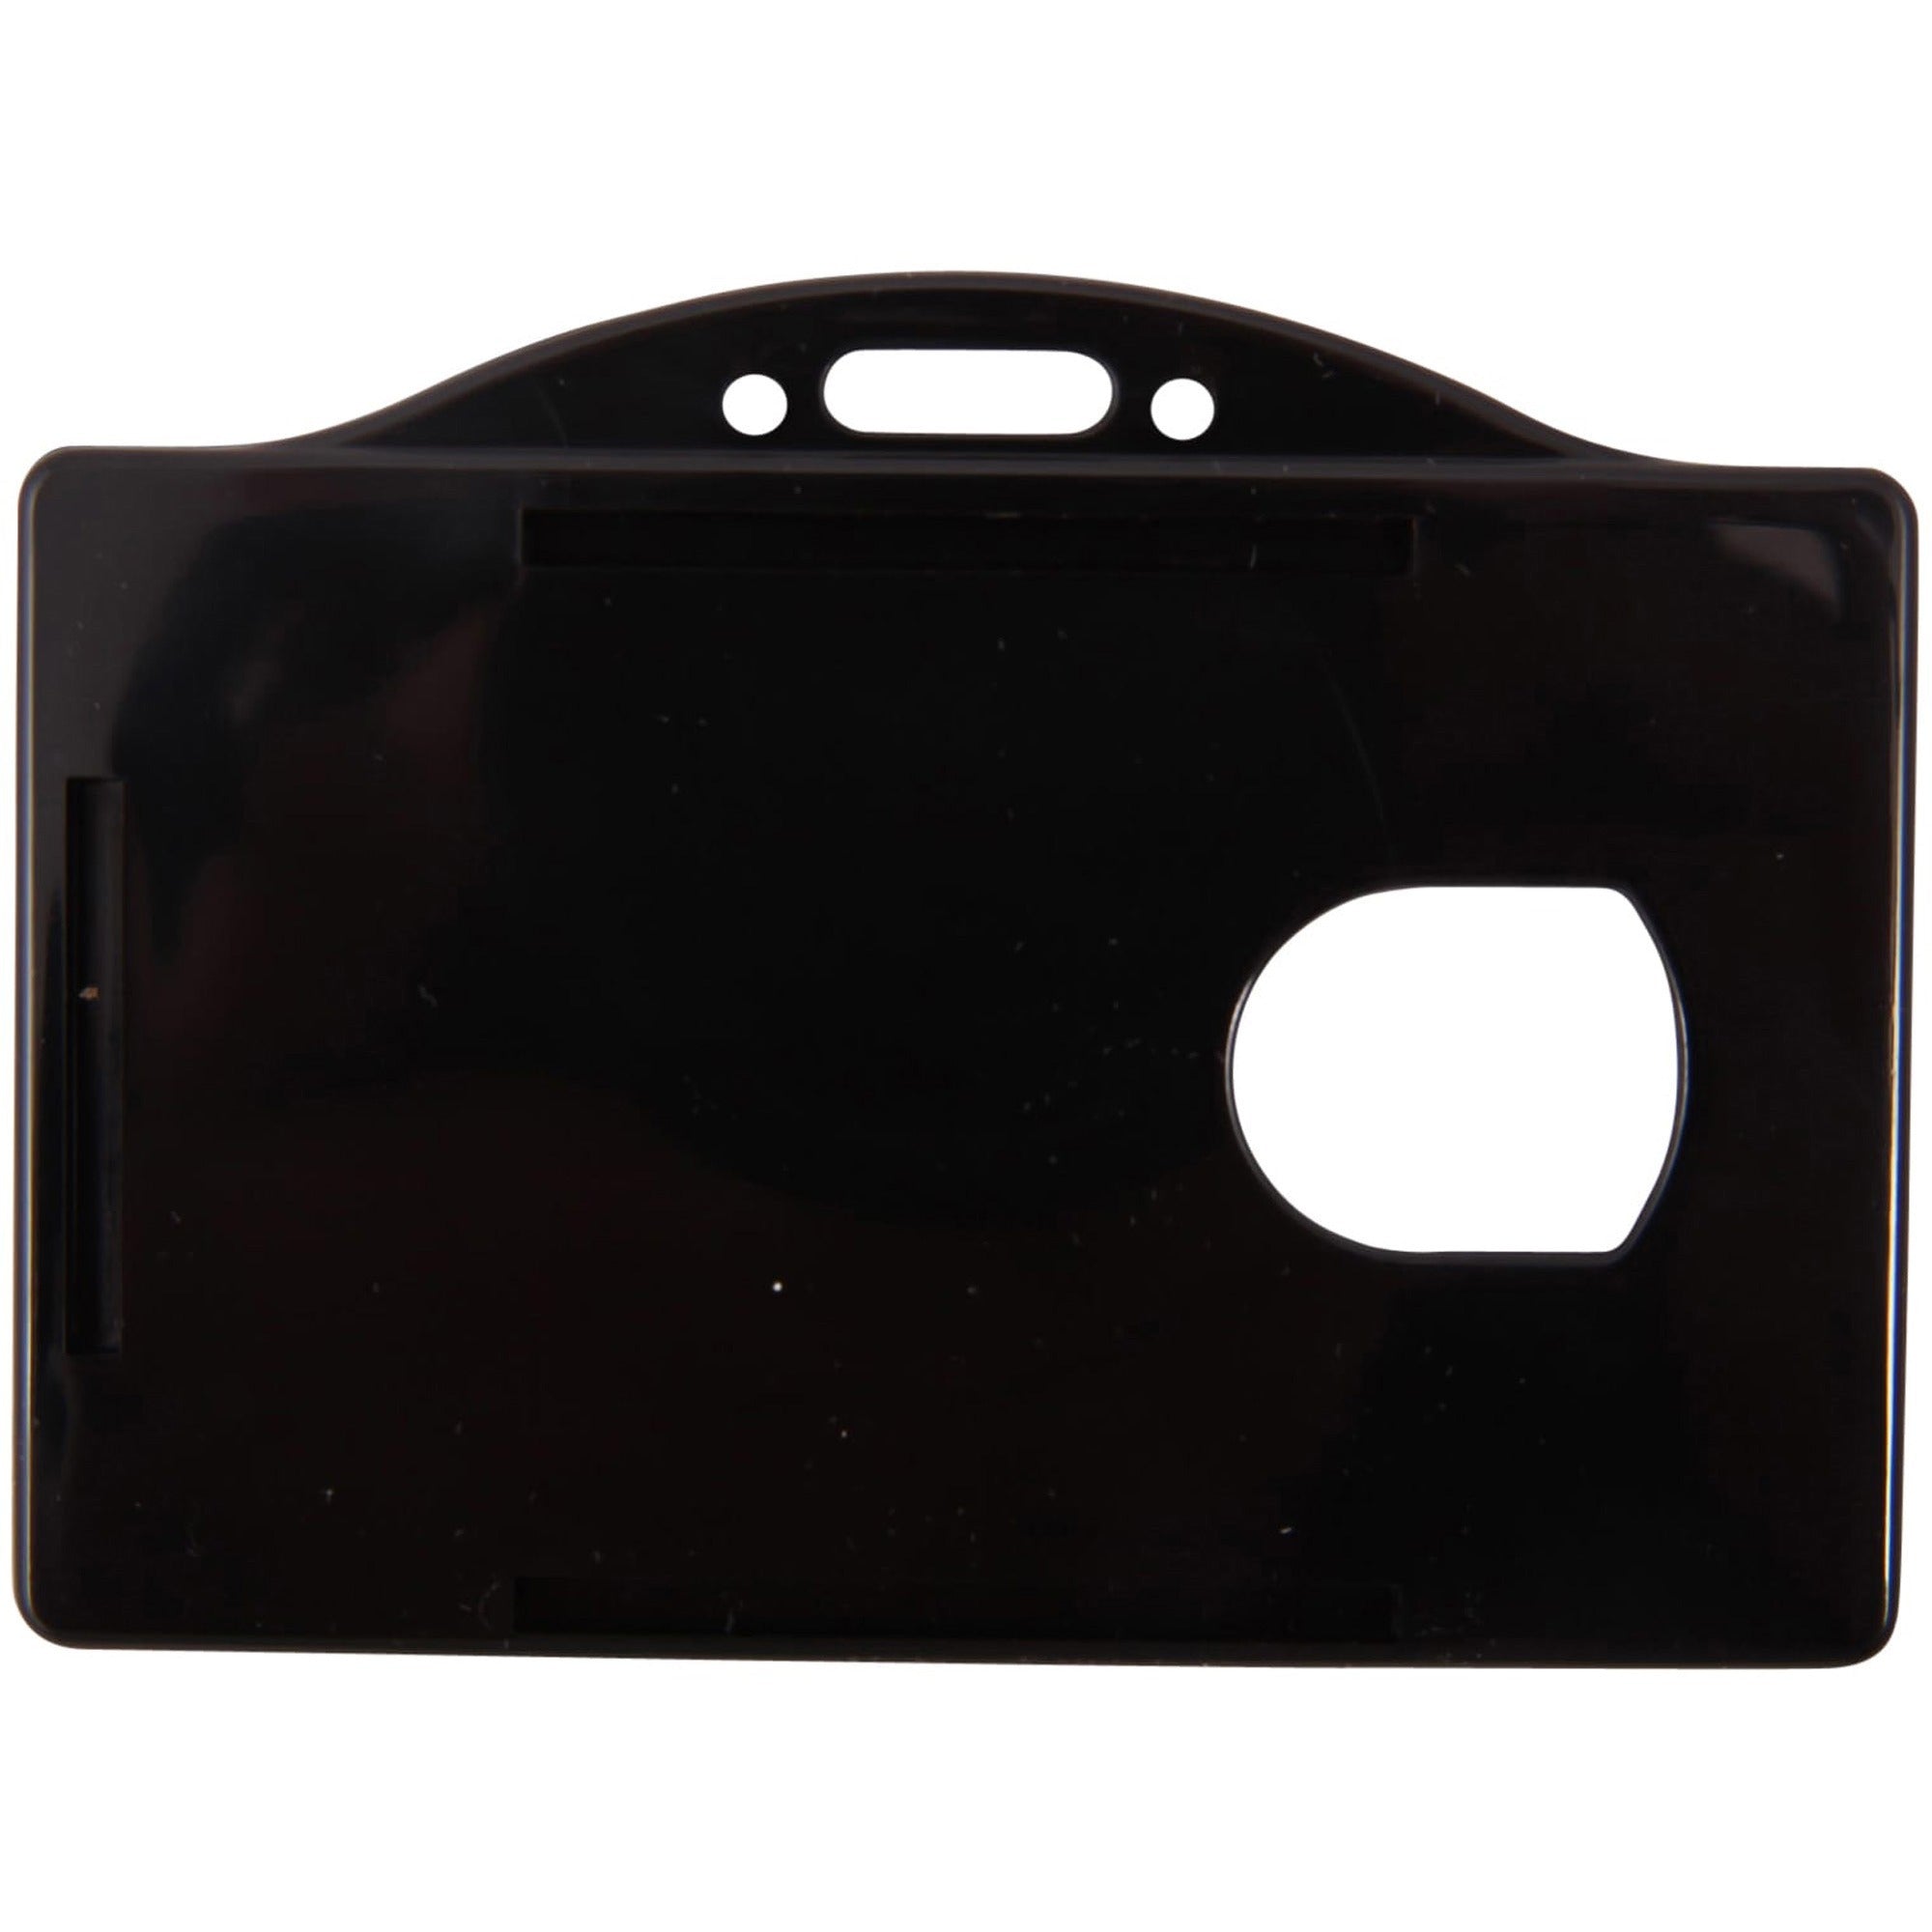 SICURIX Horizontal Black Frame ID Card Holder - Plastic - 25 / Pack - Black - 